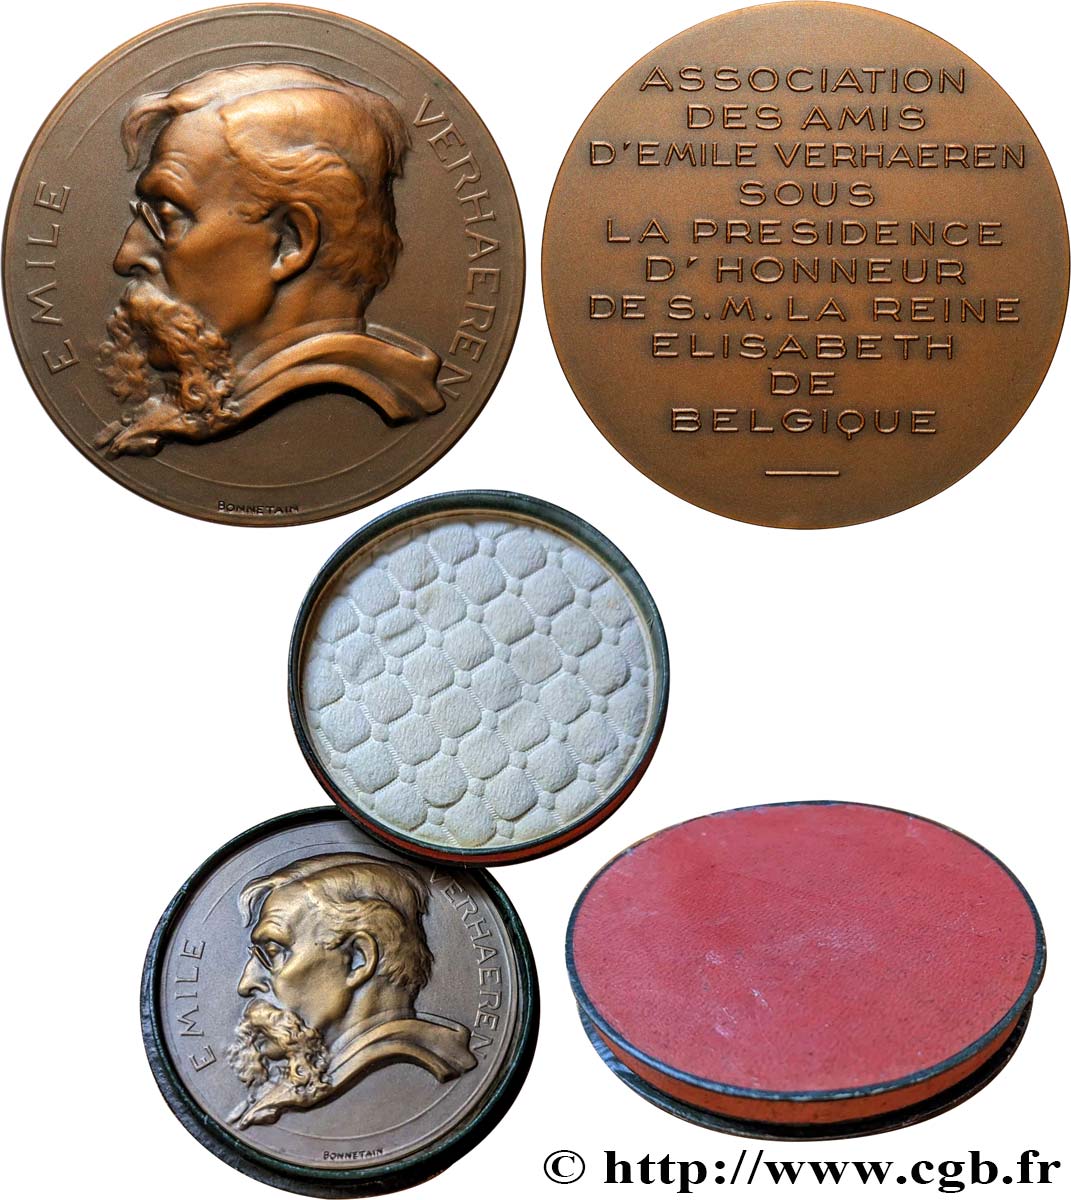 BELGIQUE - ROYAUME DE BELGIQUE - ALBERT Ier Médaille, Association des amis d’Emile Verhaeren SUP